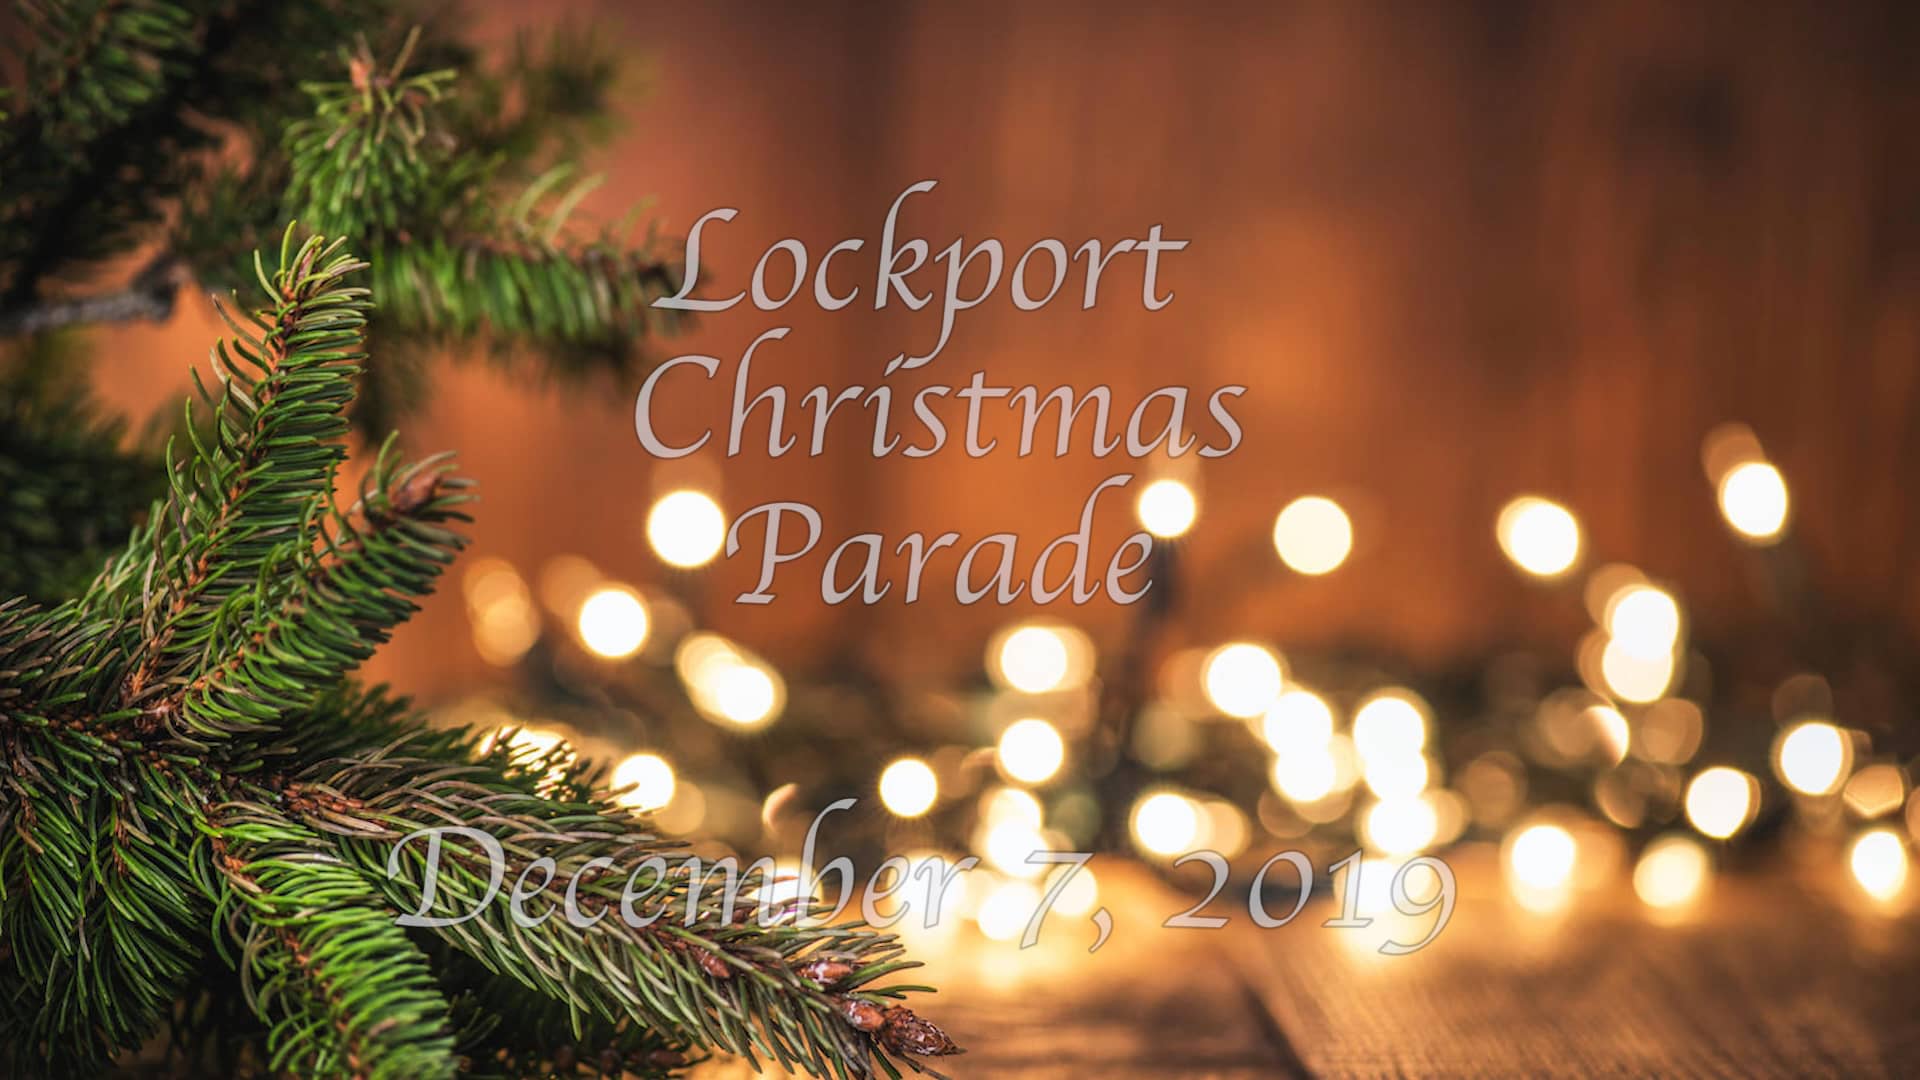 2019 Lockport Christmas Parade (120719) on Vimeo